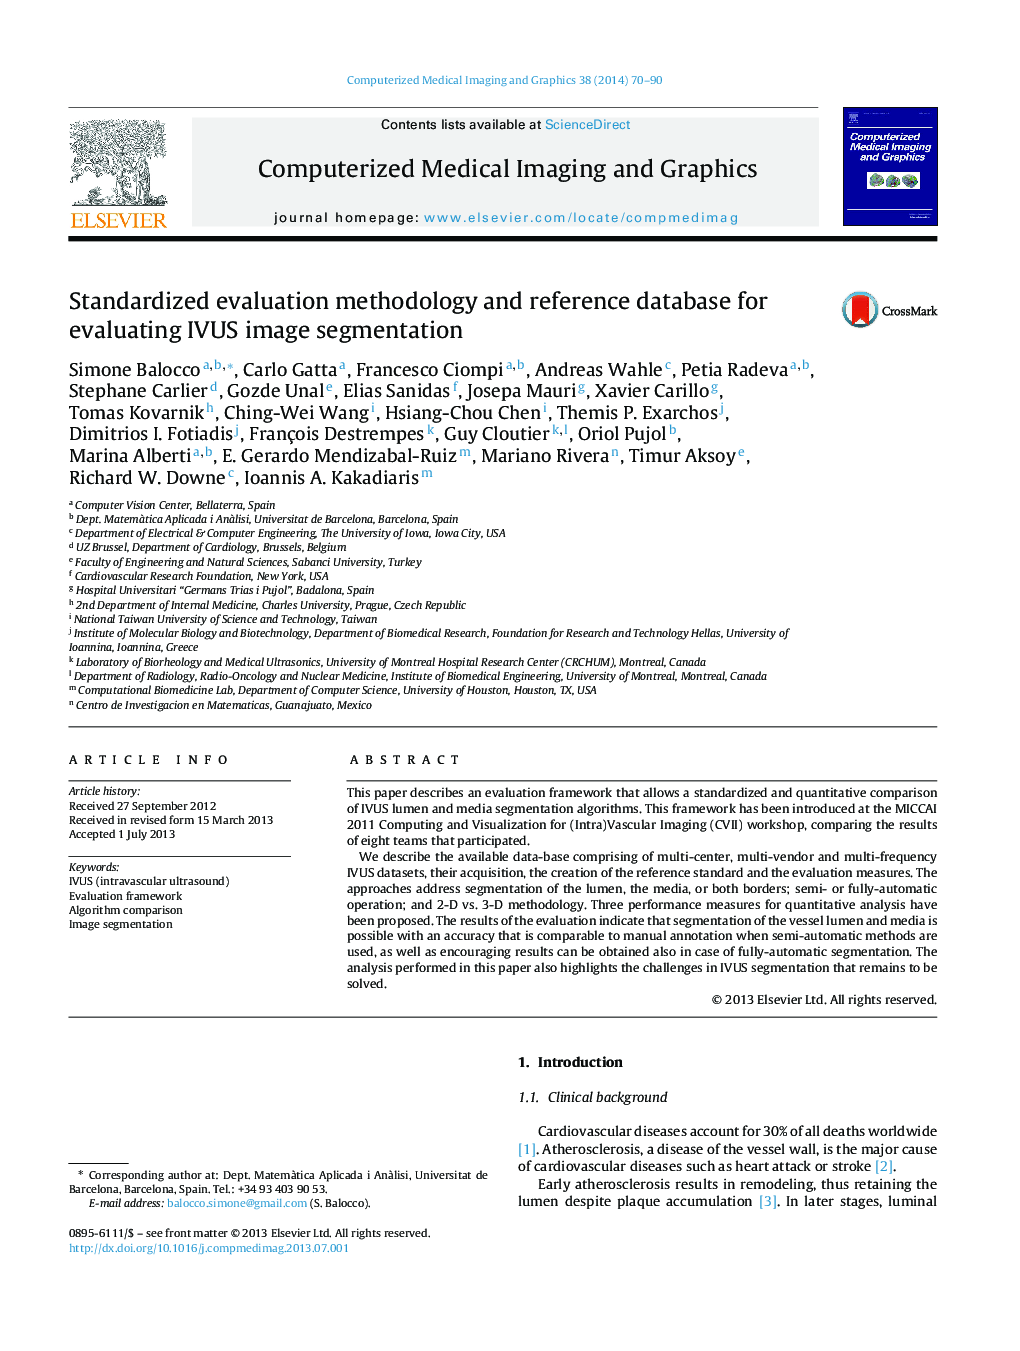 Standardized evaluation methodology and reference database for evaluating IVUS image segmentation